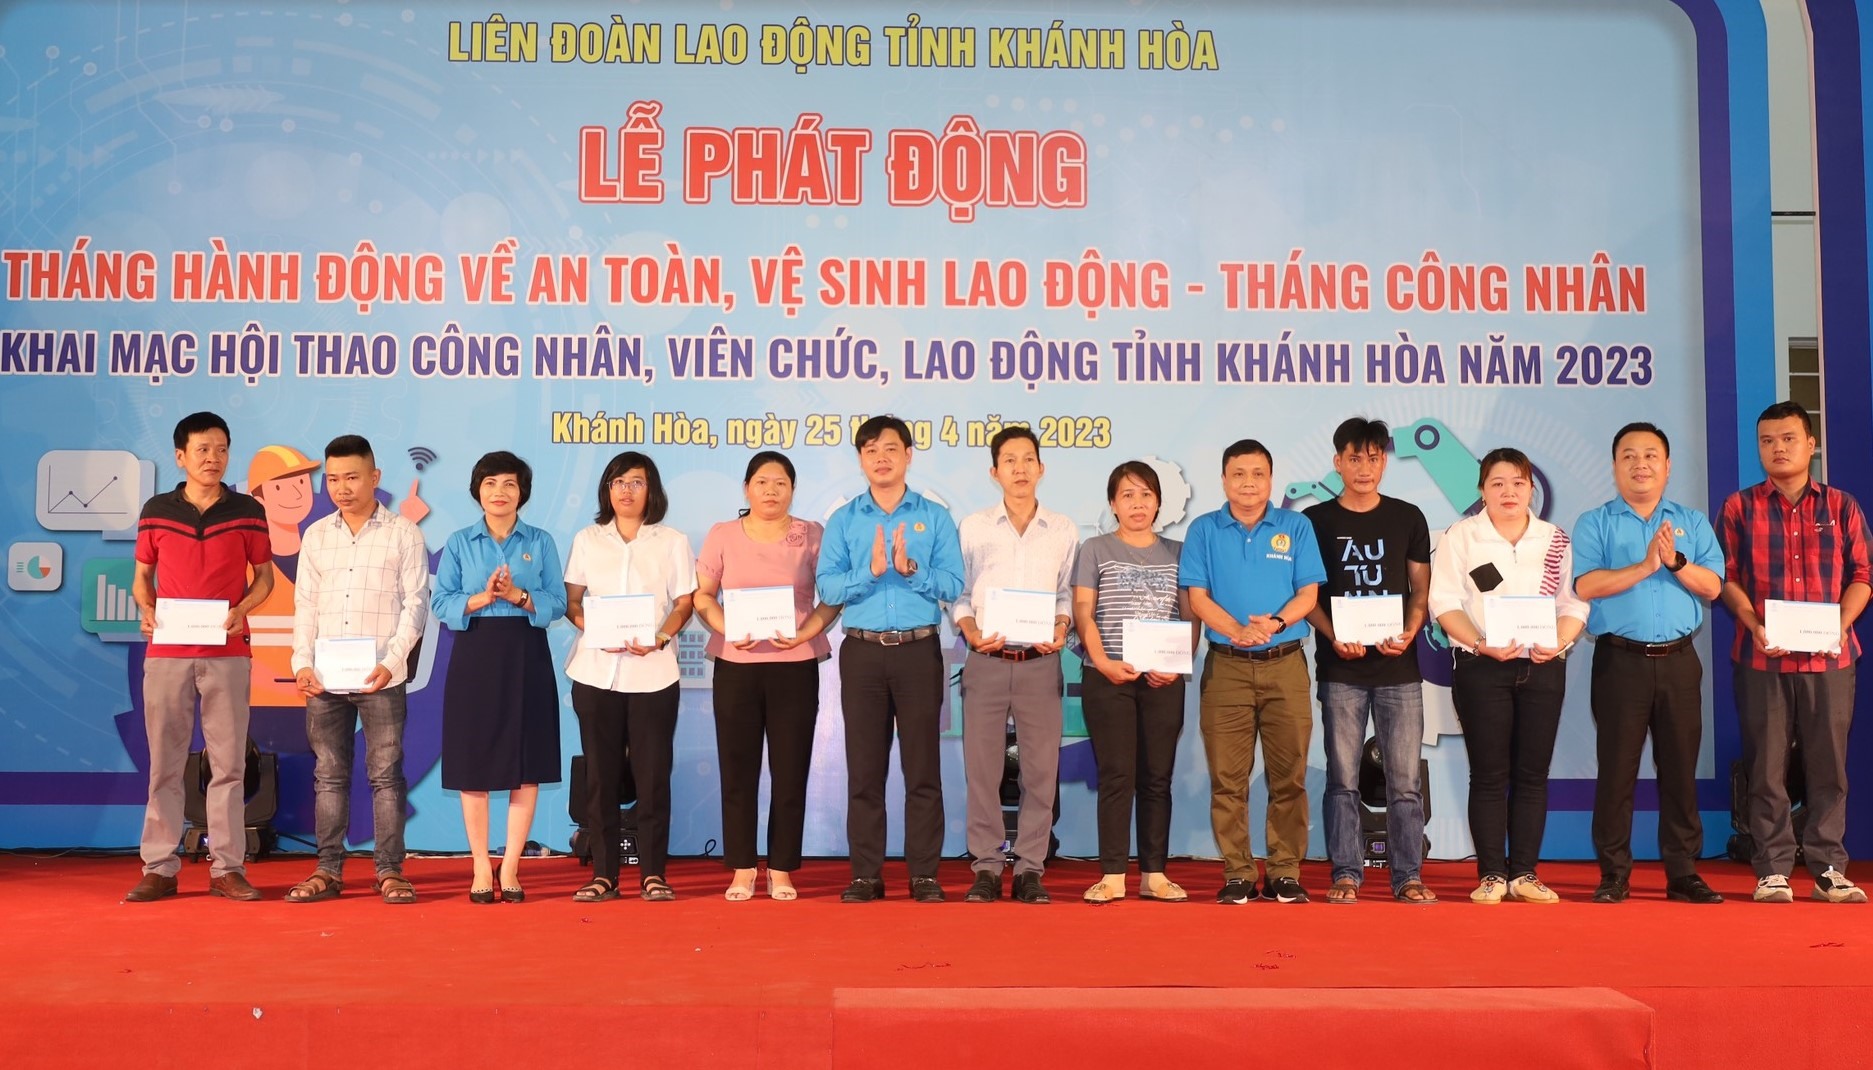 LĐLĐ Khánh Hòa hỗ trợ đoàn viên bị tai nạn lao động tại lễ phát động Tháng Công nhân 2023. Ảnh: Phương Linh